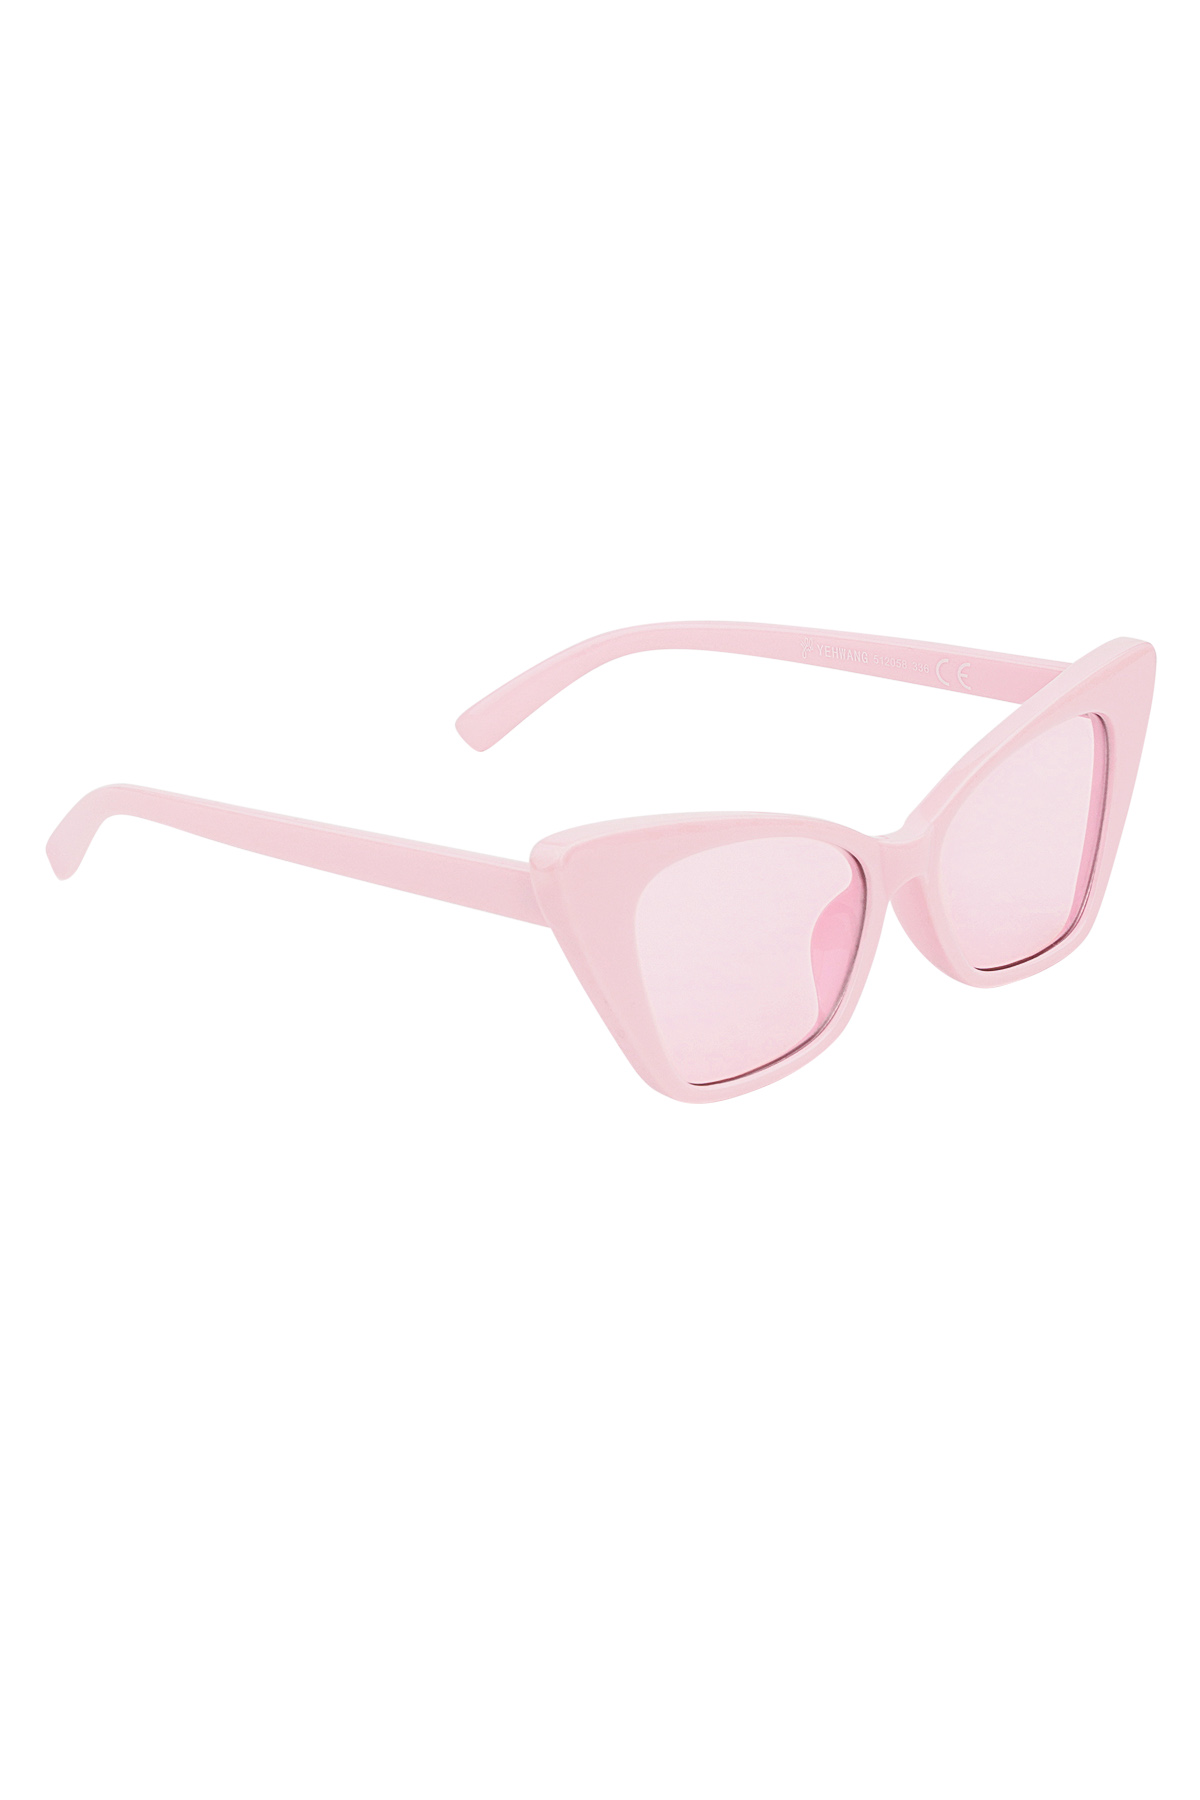 Zonnebrillen eenkleurig montuur - roze